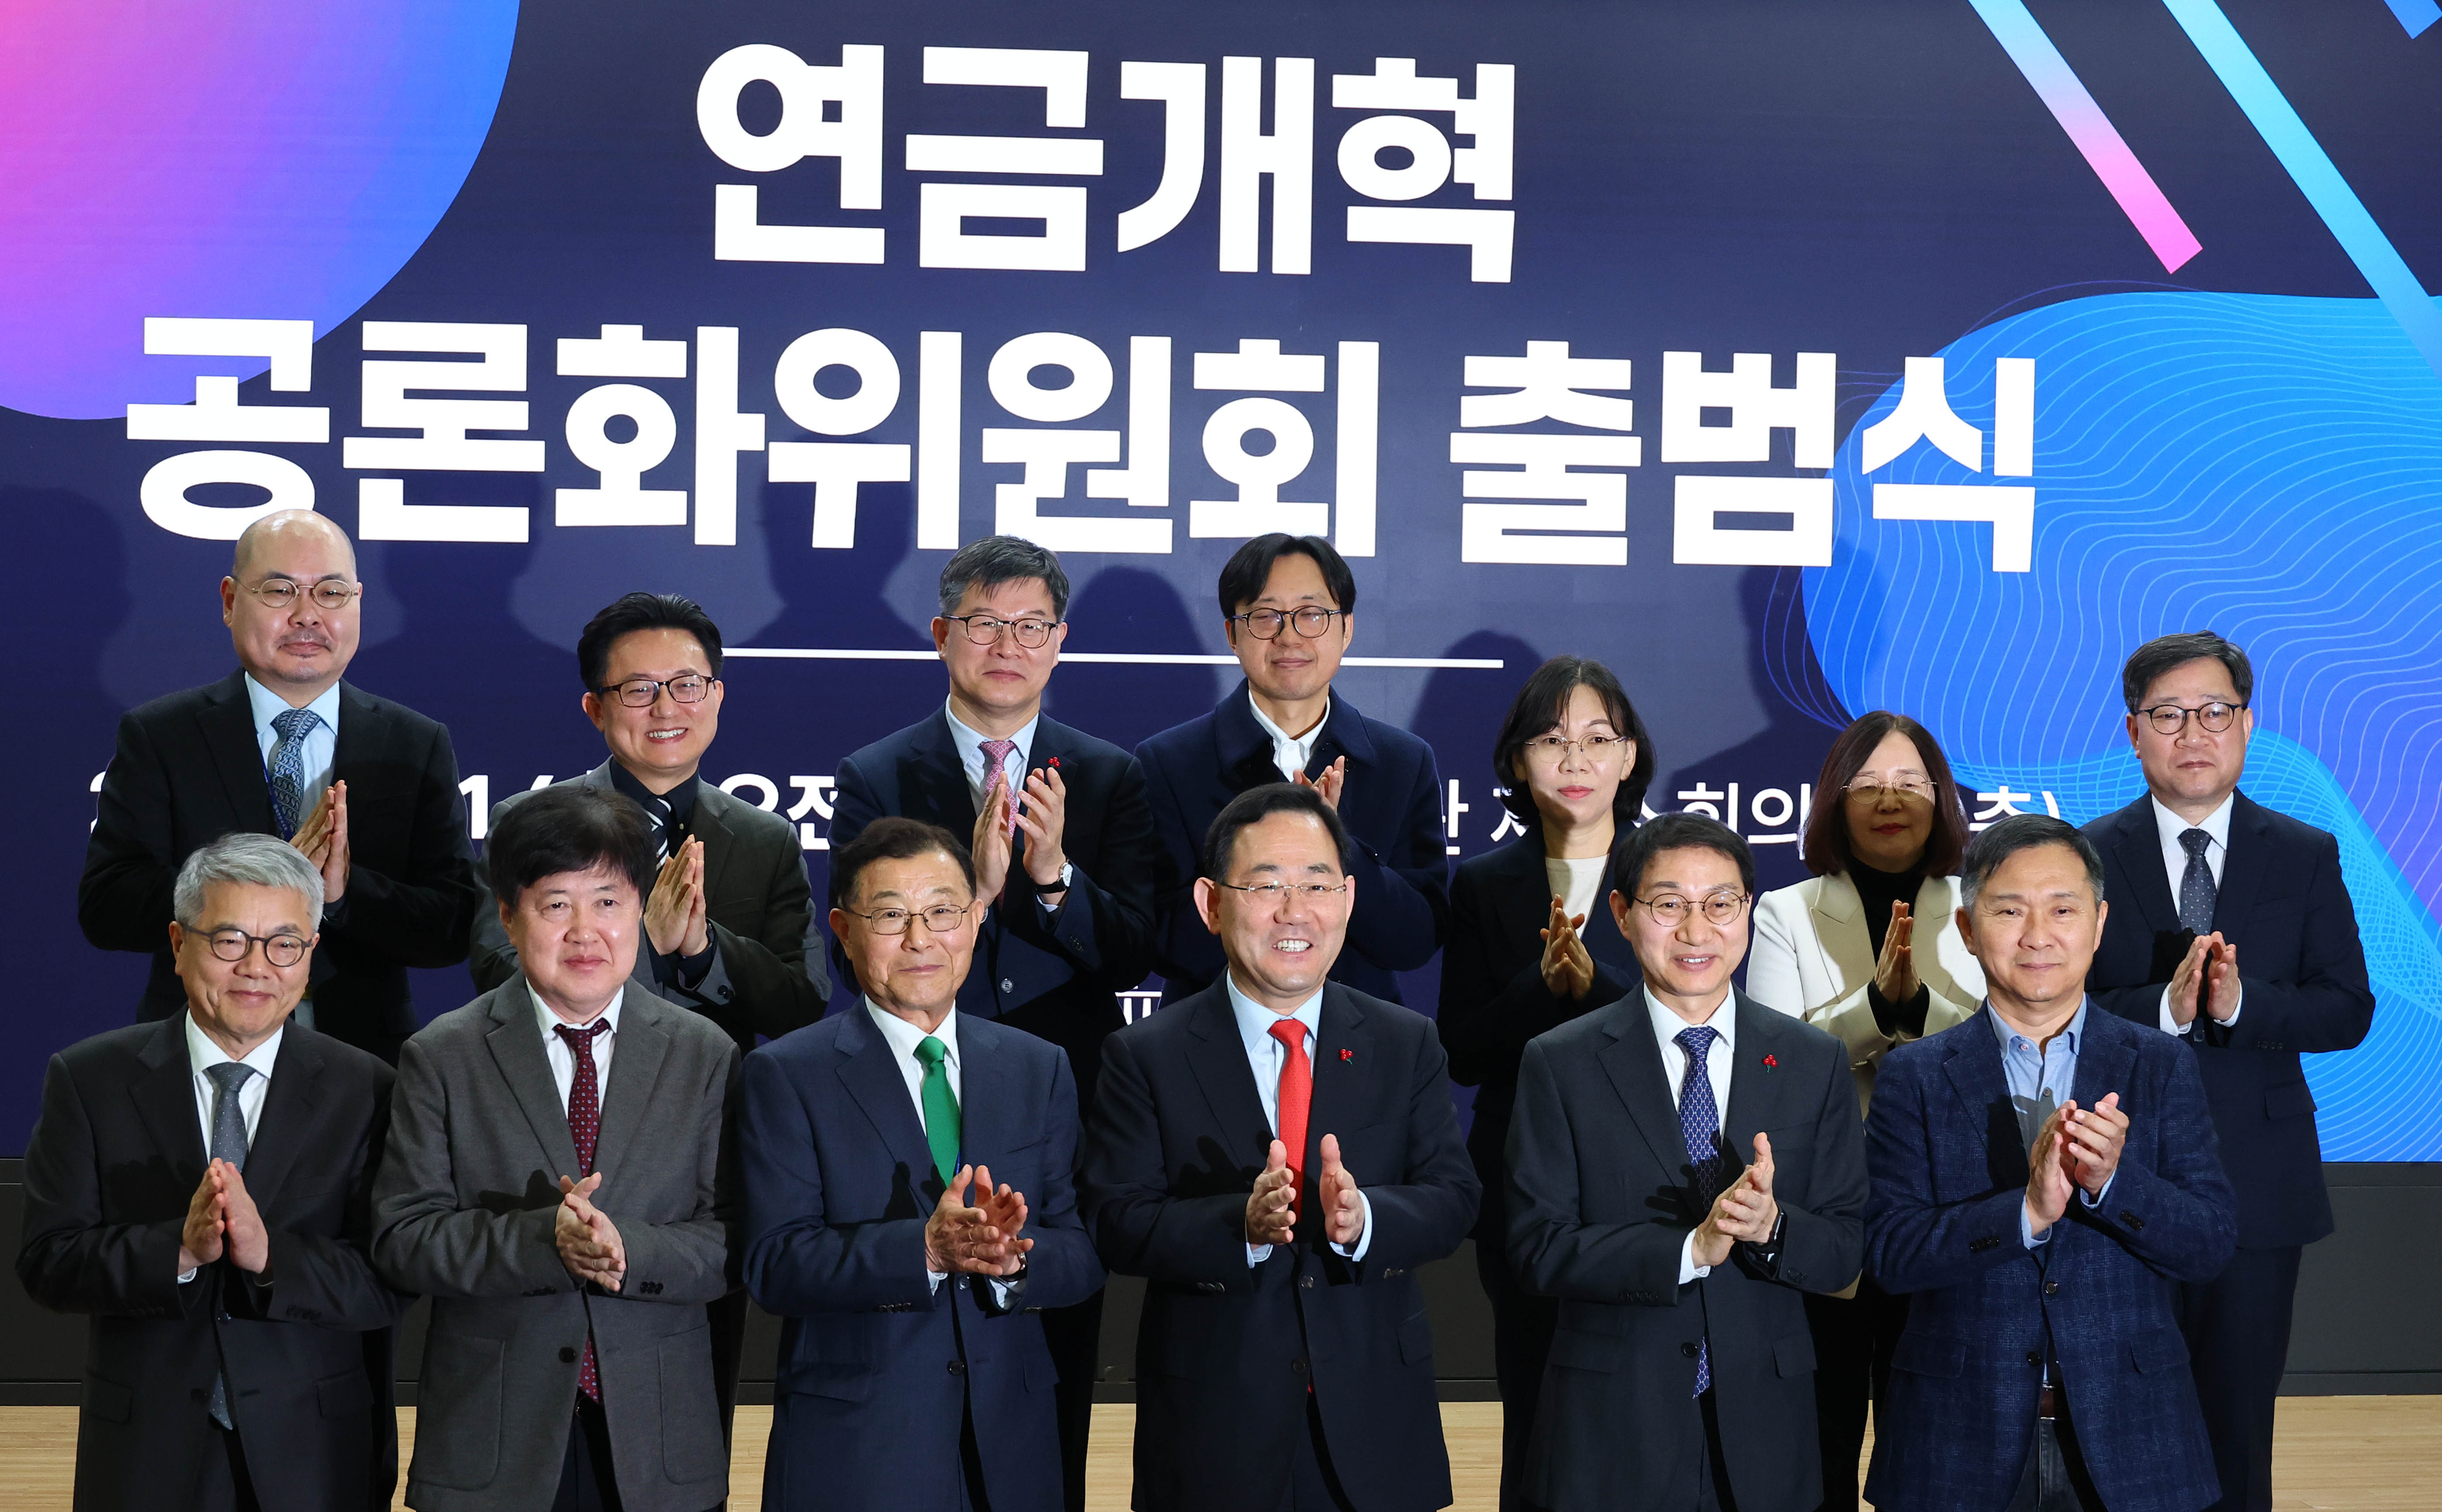 31일 오전 서울 국회 의원회관에서 열린 연금개혁 공론화위원회 출범식이 열렸다.